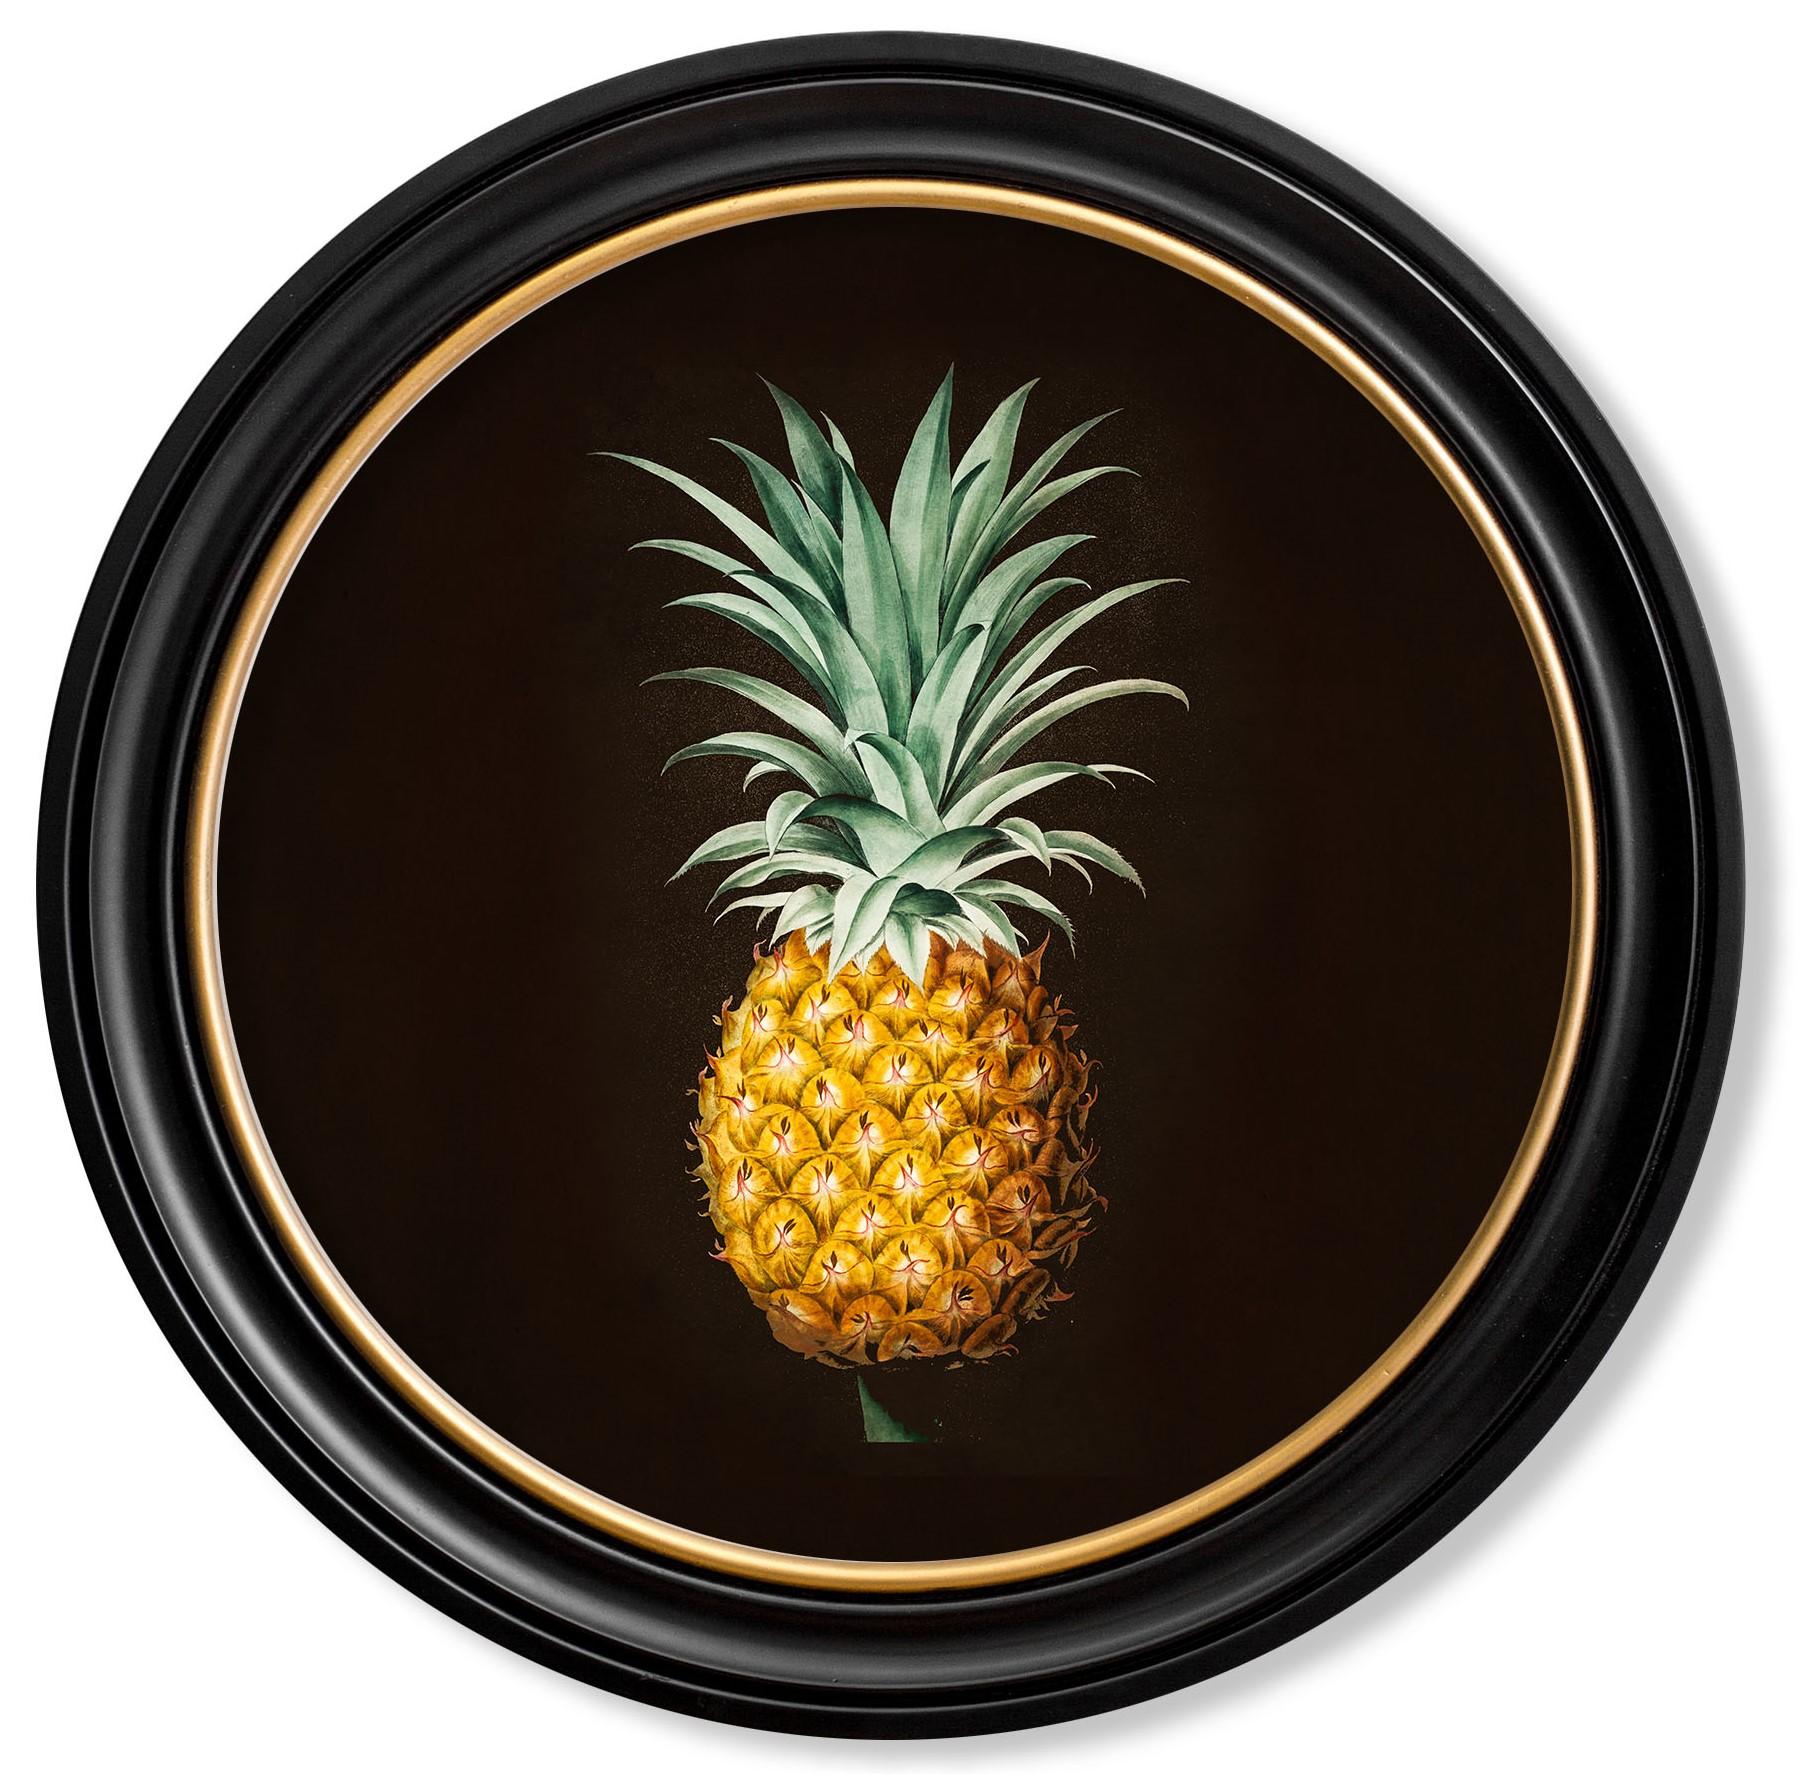 Il s'agit d'une ravissante reproduction encadrée d'une étude sur l'ananas provenant d'une illustration botanique française du début du 19e siècle, colorée à la main.

Les tirages de ce style étaient à l'origine imprimés en noir et blanc, puis peints